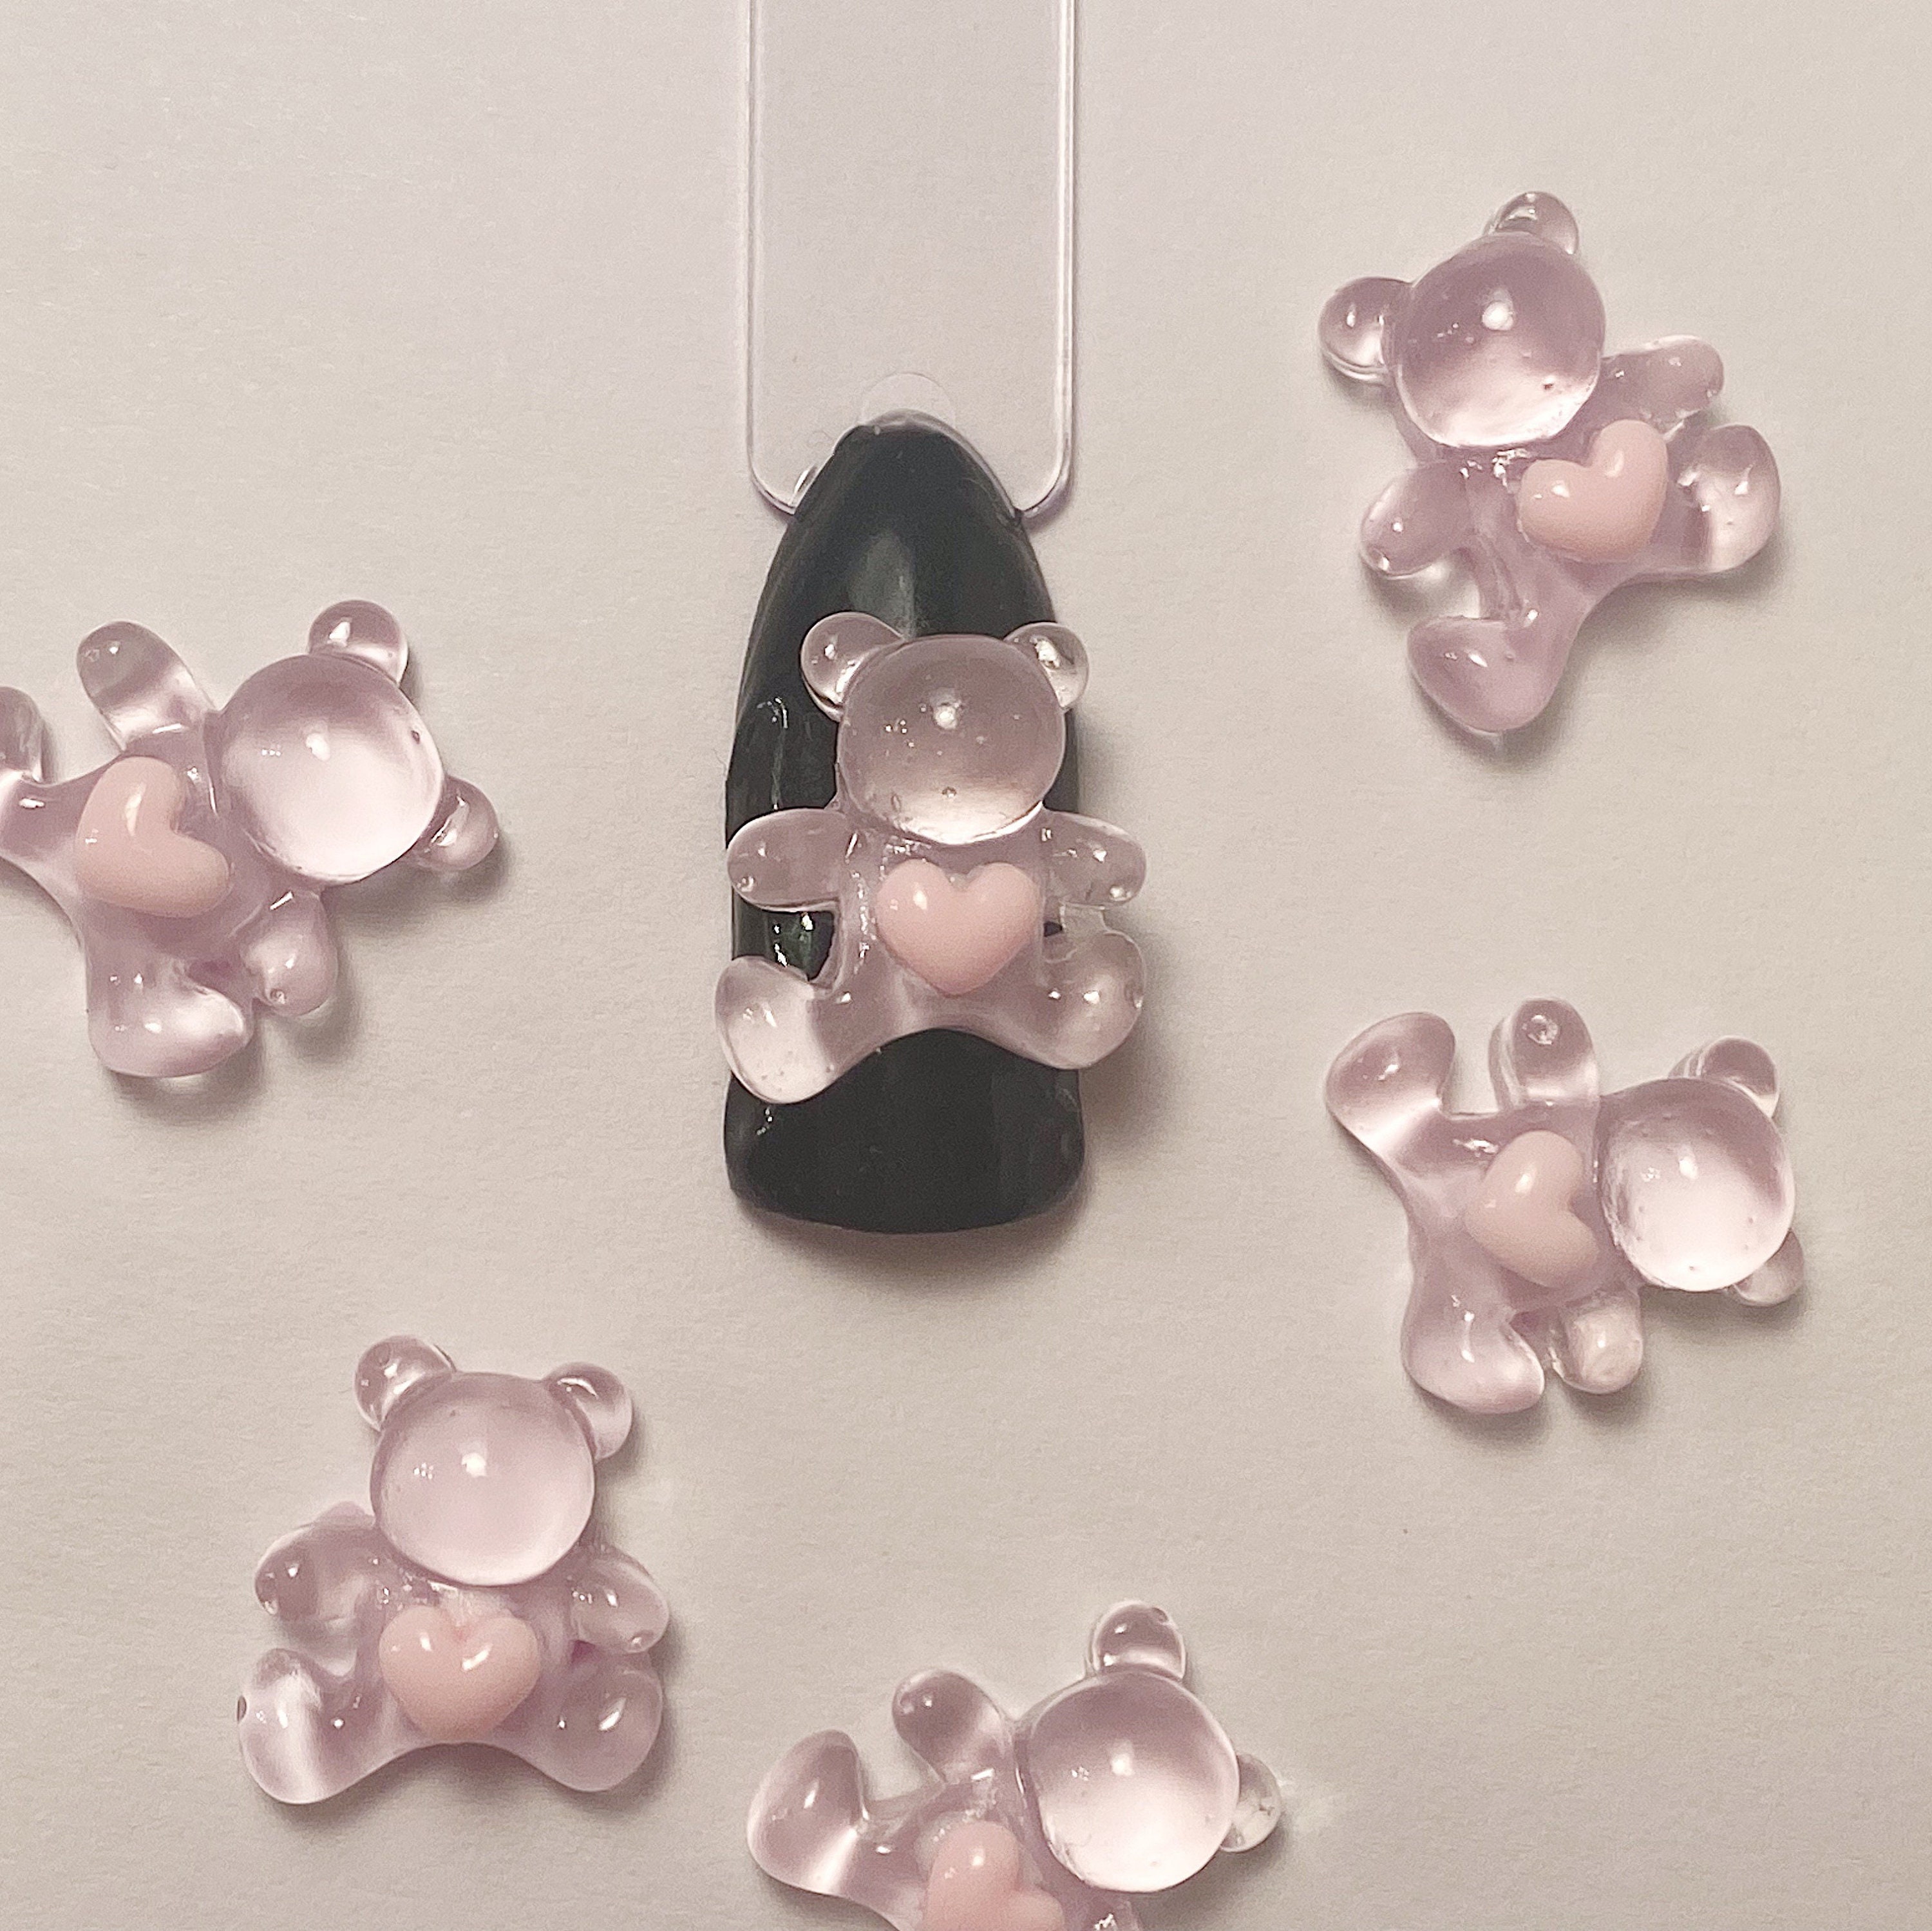 1PC 3D Cute Alloy Bear Nail Charm With Crystal Heart 